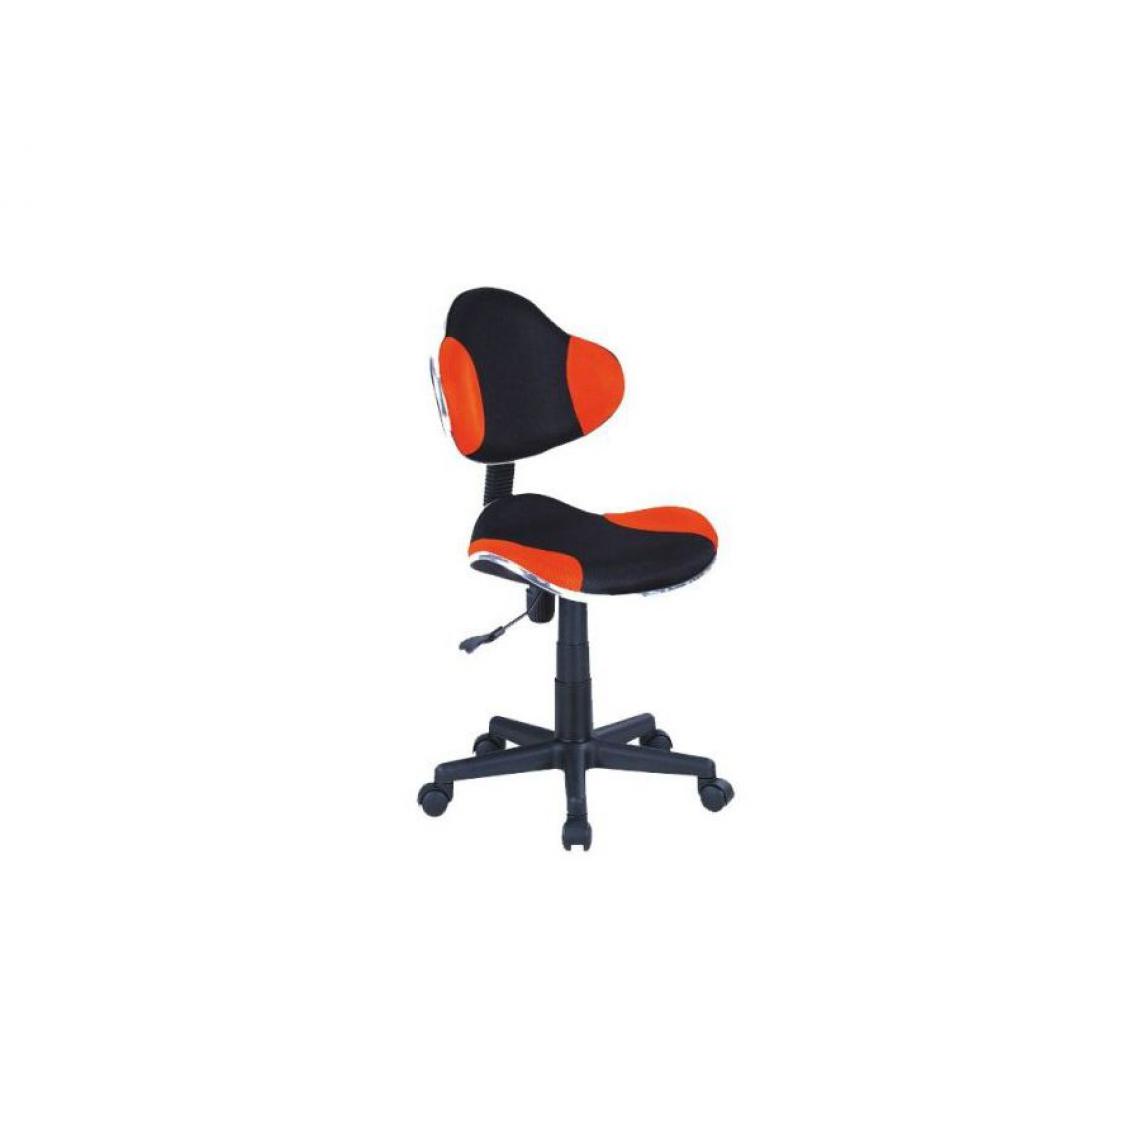 Hucoco - ABBEY | Chaise pivotante pour enfants | Hauteur réglable 80-92 cm | Tissu haute qualité | Chaise de bureau à roulettes - Orange - Chaises